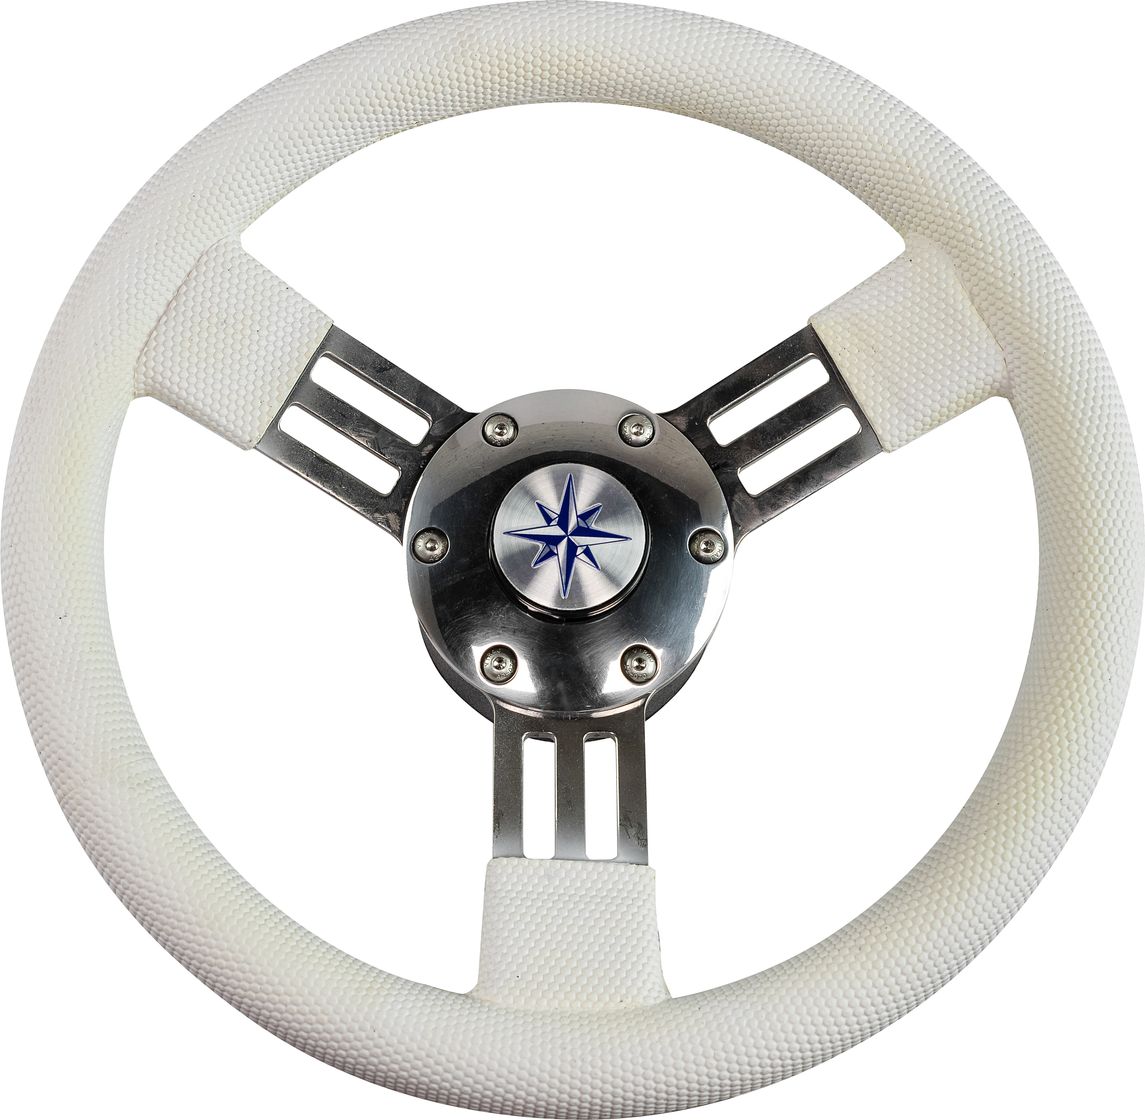 Рулевое колесо PEGASO обод белый, спицы серебряные д. 300 мм VN13327-08 рулевое колесо lipari обод белый спицы серебряные д 280 мм со спинером vn828050 08